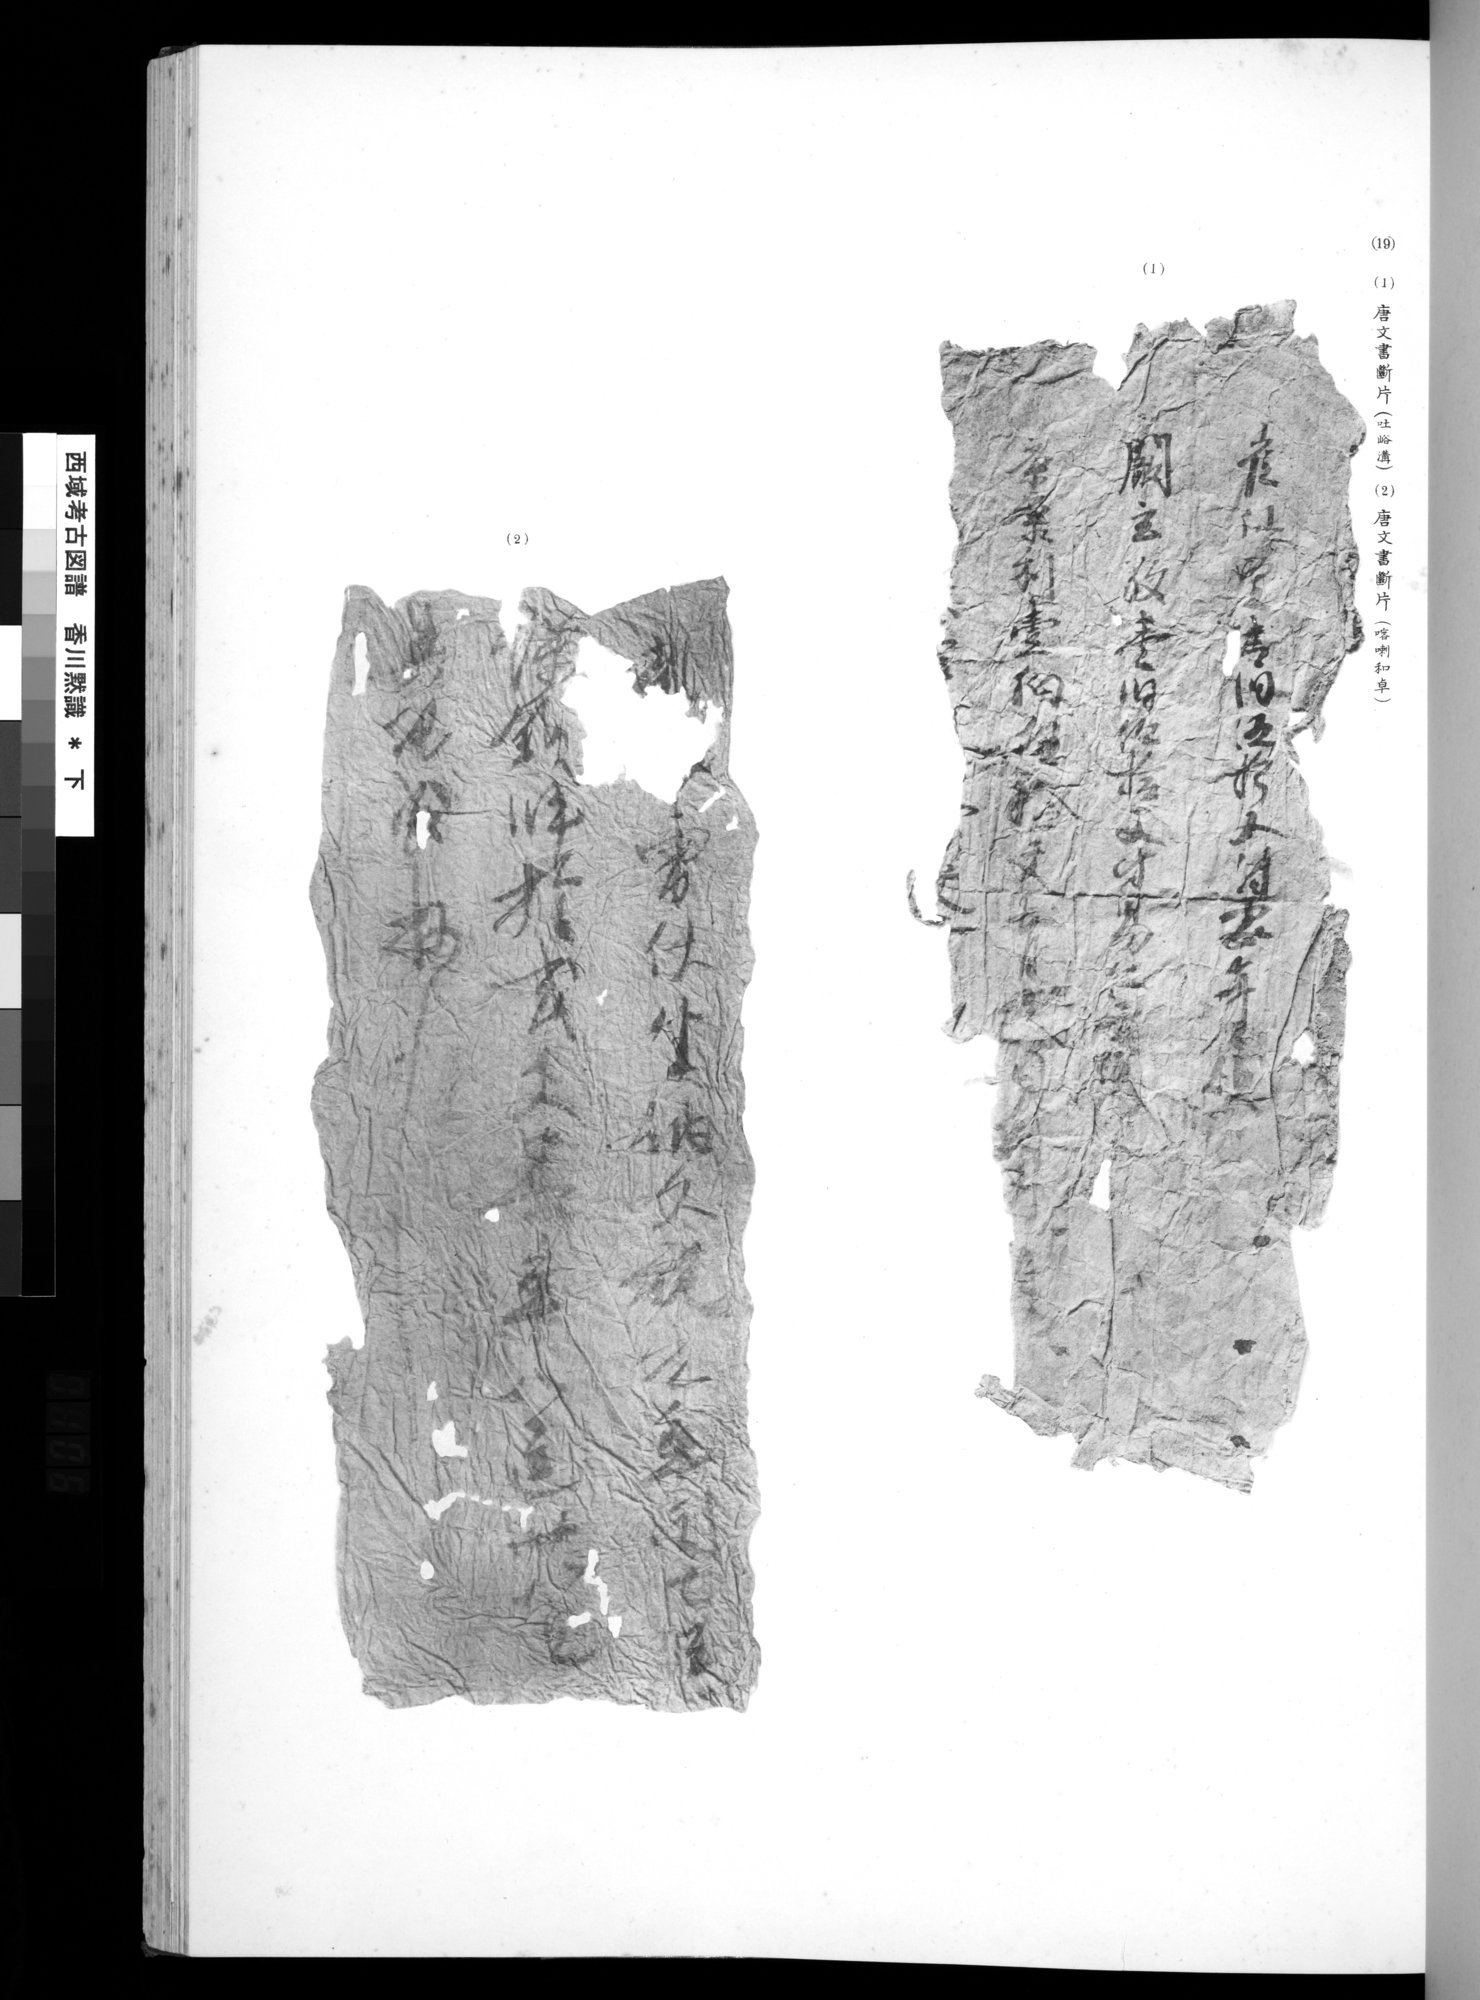 西域考古図譜 : vol.2 / 211 ページ（白黒高解像度画像）